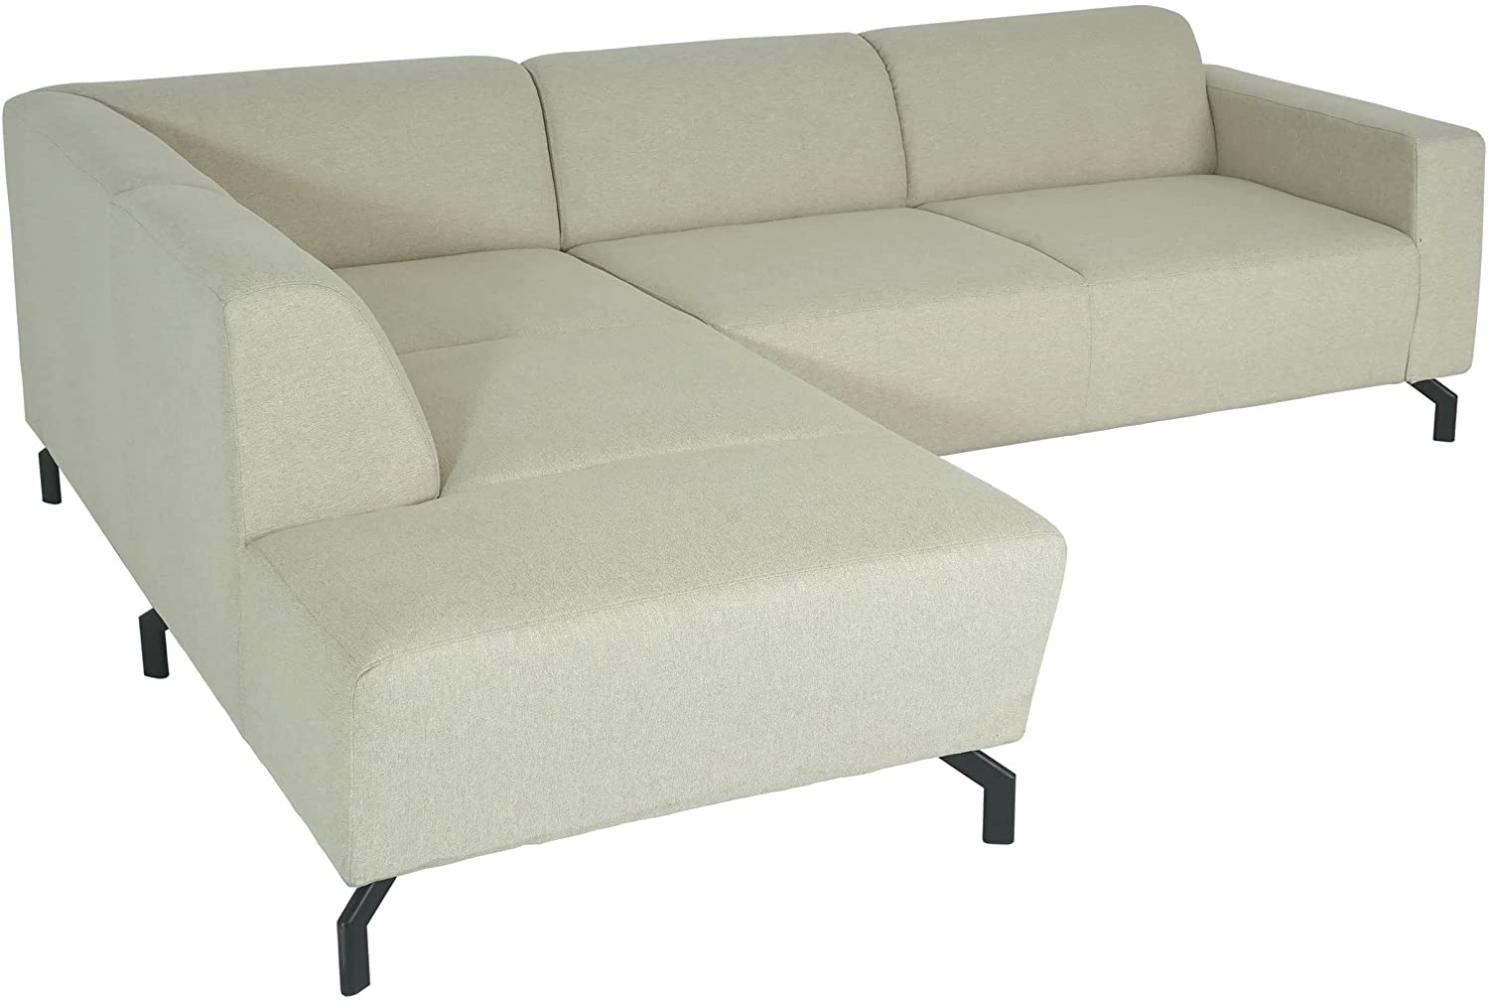 Ecksofa HWC-J60, Couch Sofa mit Ottomane links, Made in EU, wasserabweisend ~ Stoff/Textil sand-braun Bild 1